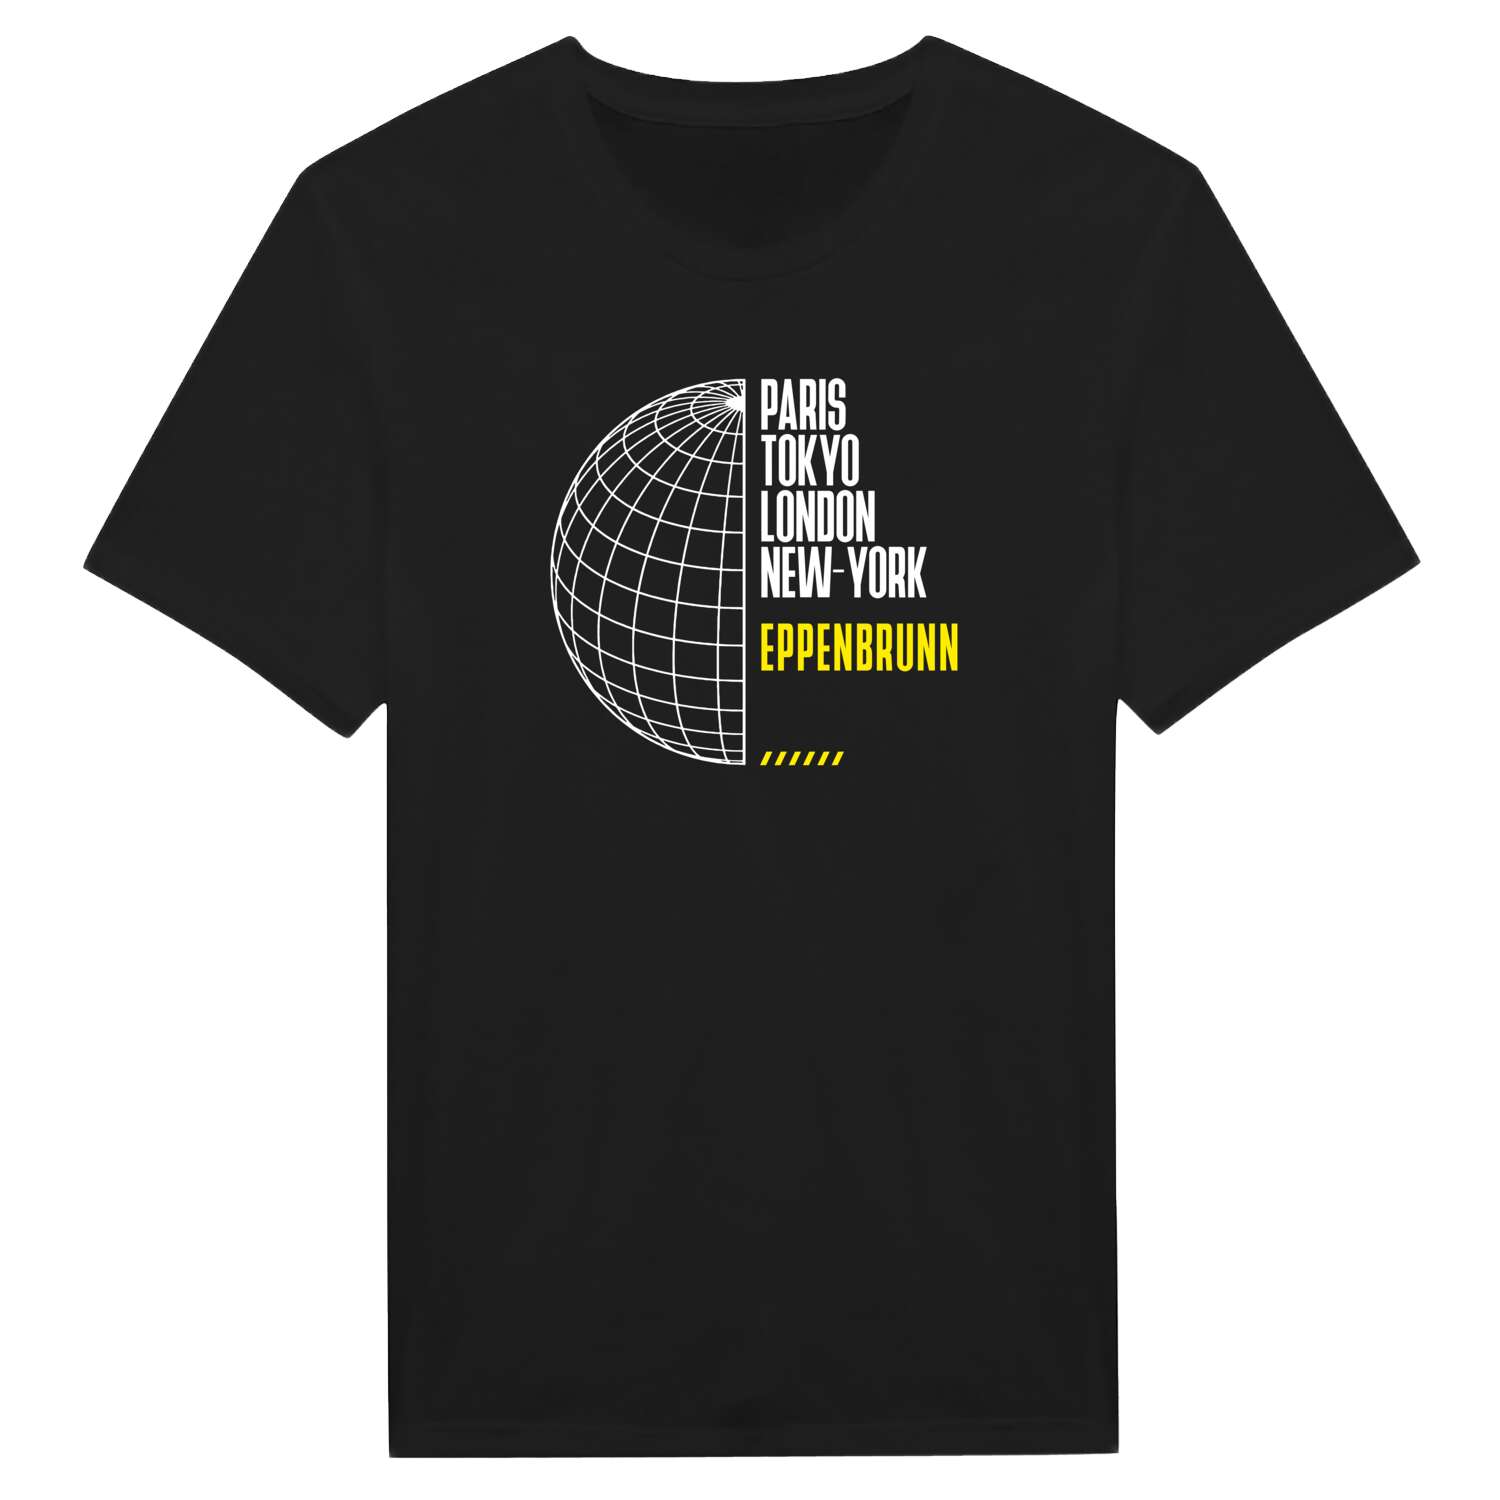 Eppenbrunn T-Shirt »Paris Tokyo London«